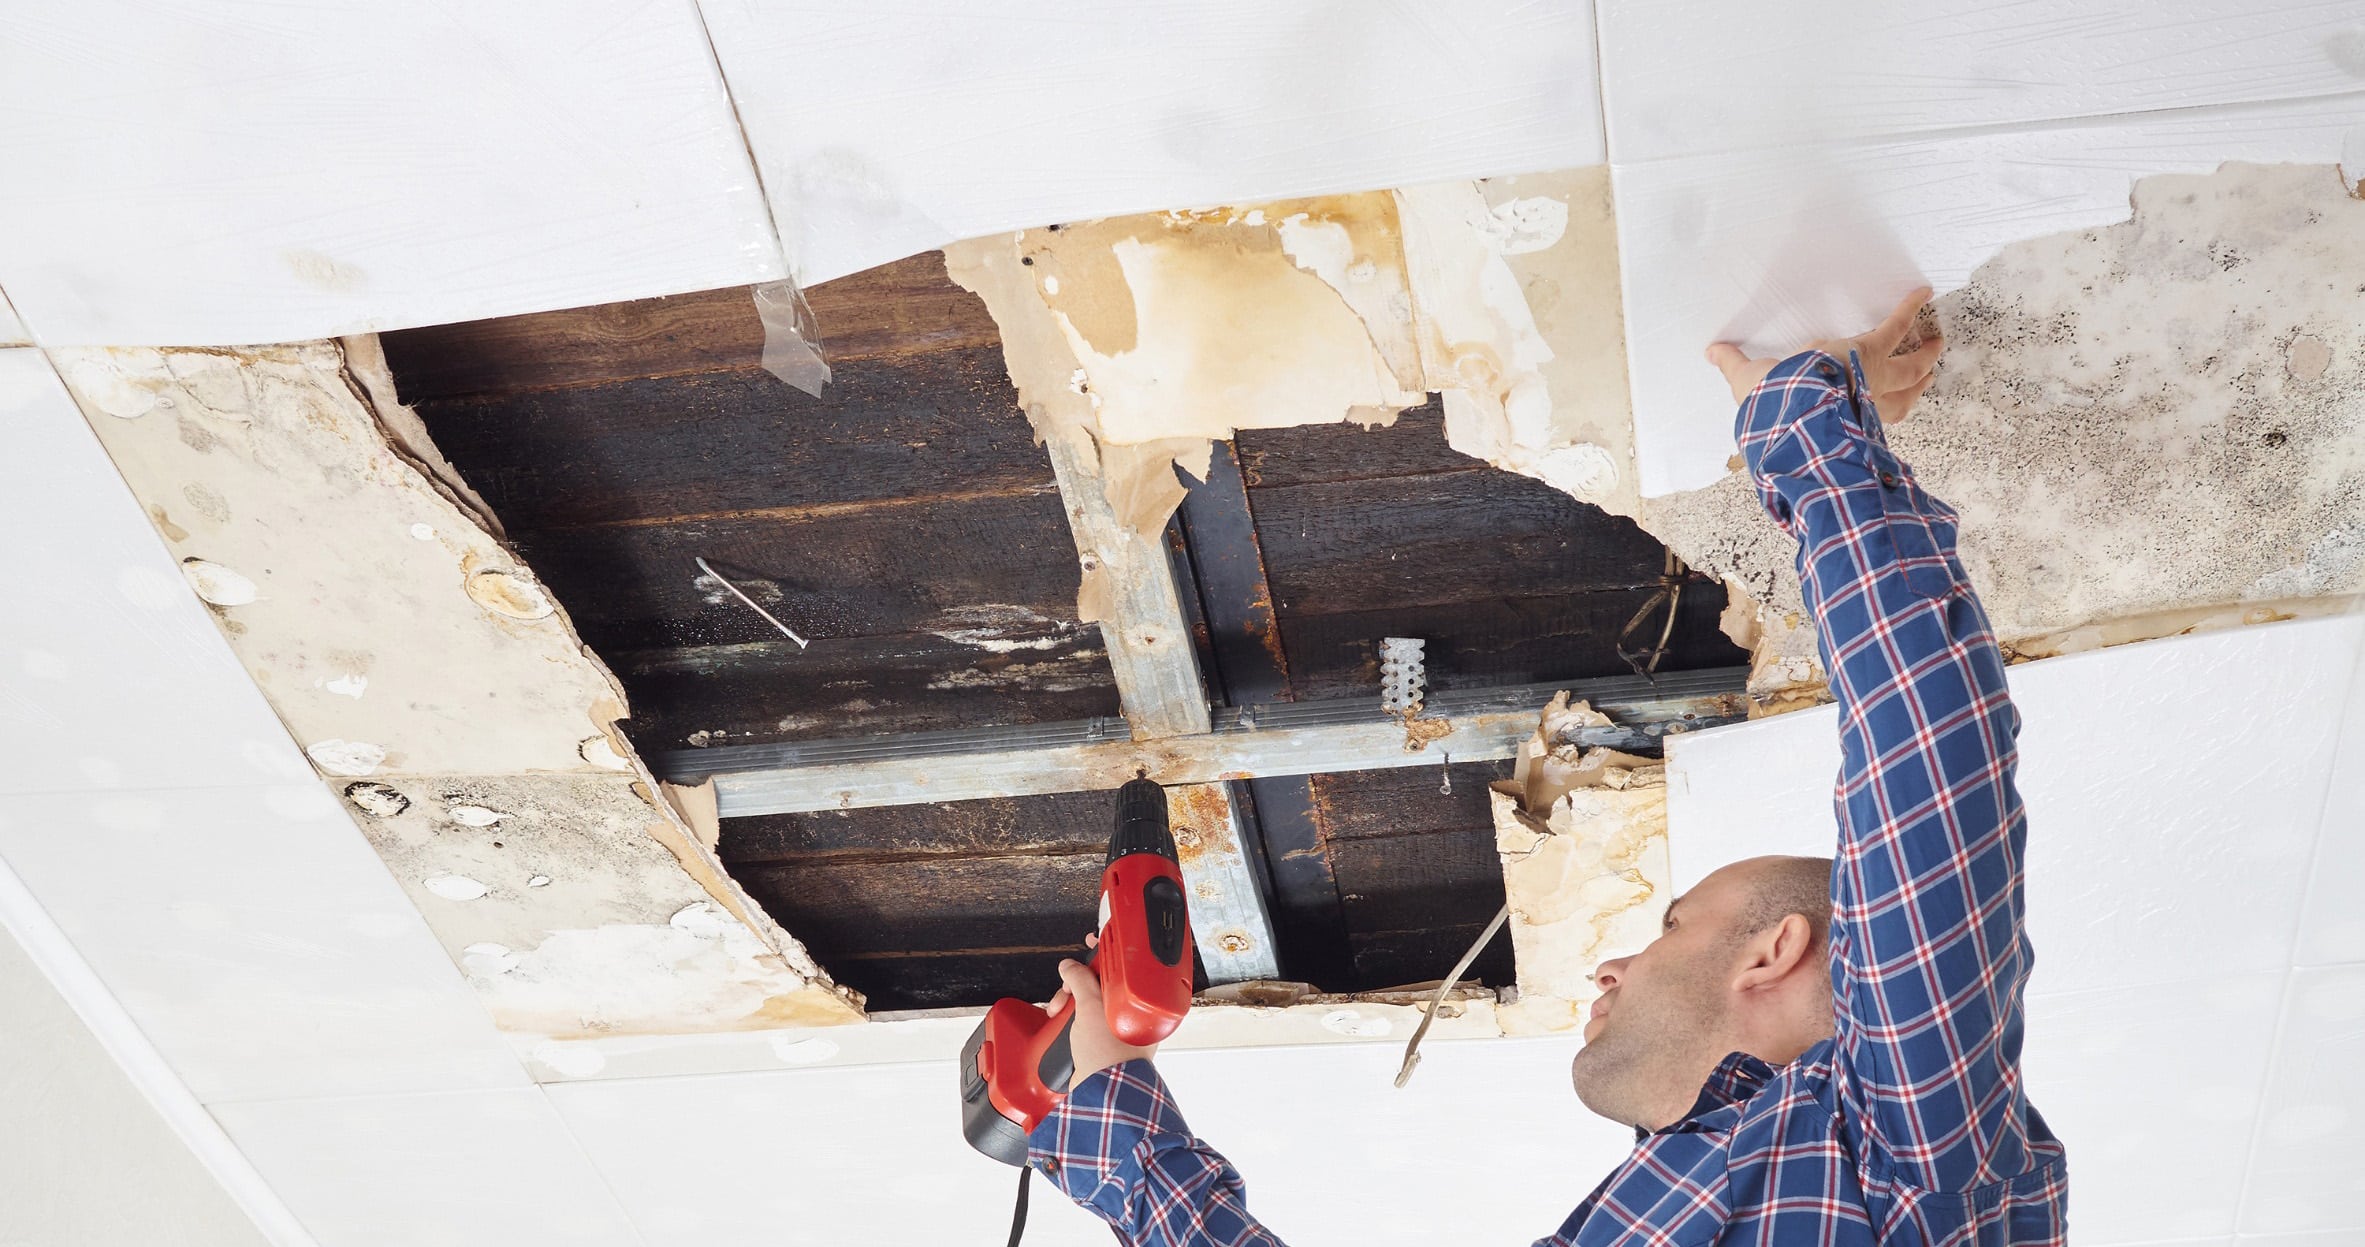 Man repairing collapsed ceiling